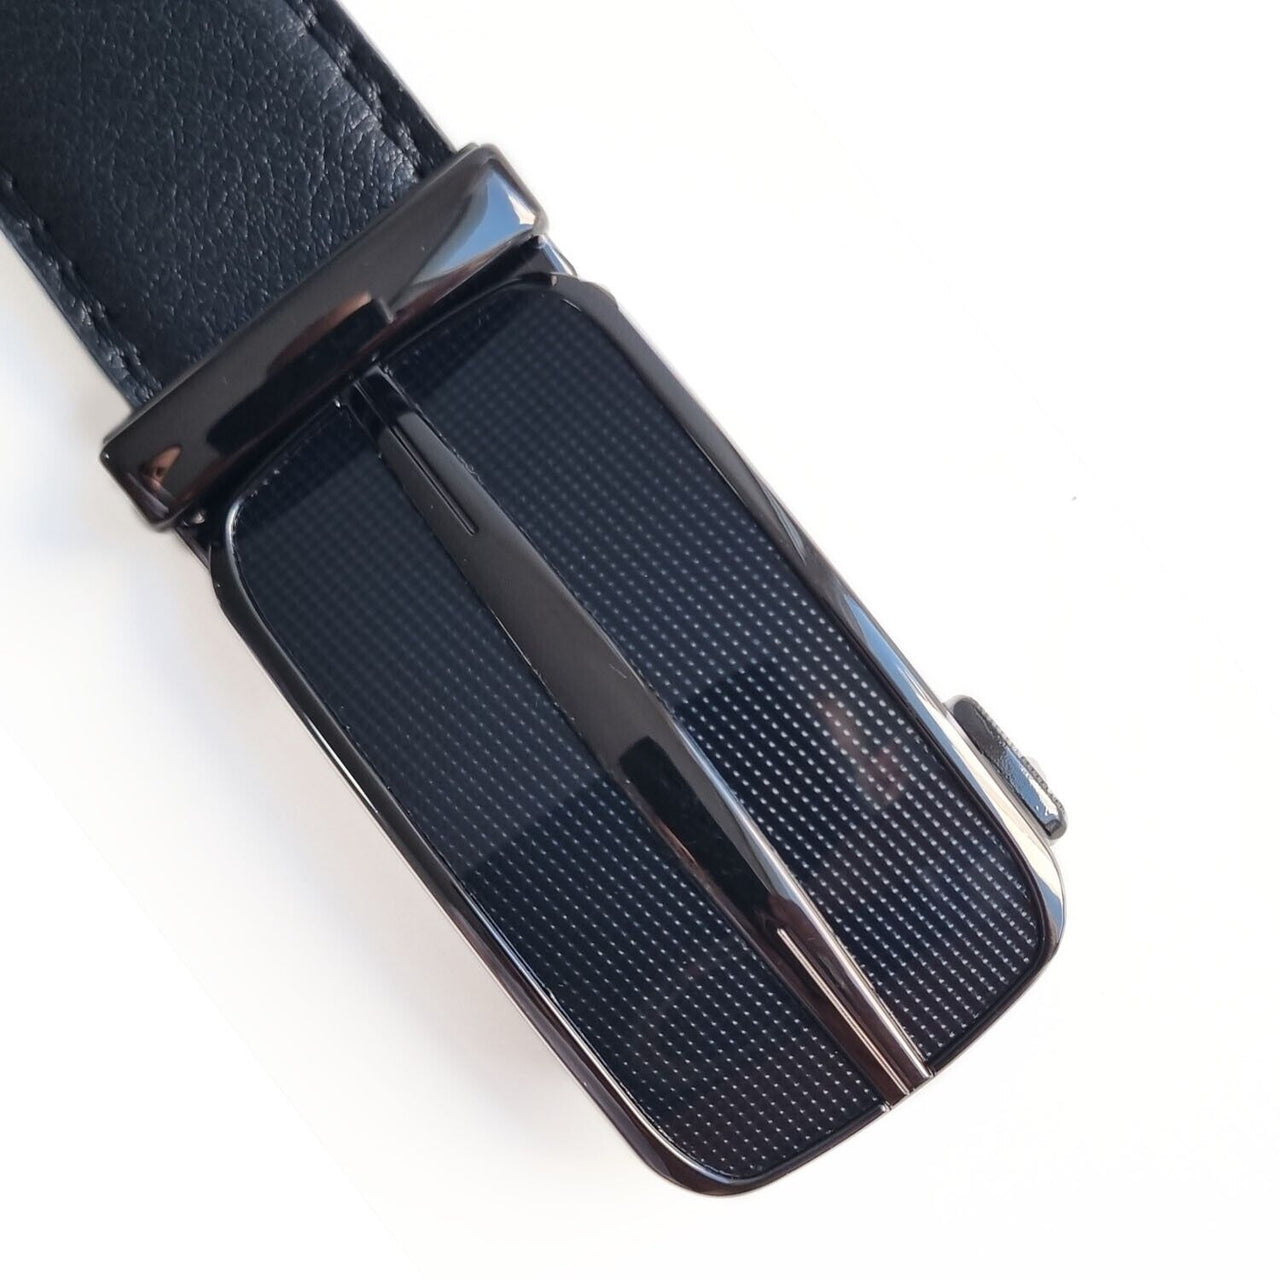 Dropship Microfiber Leather Mens Ratchet Belt Belts For Men